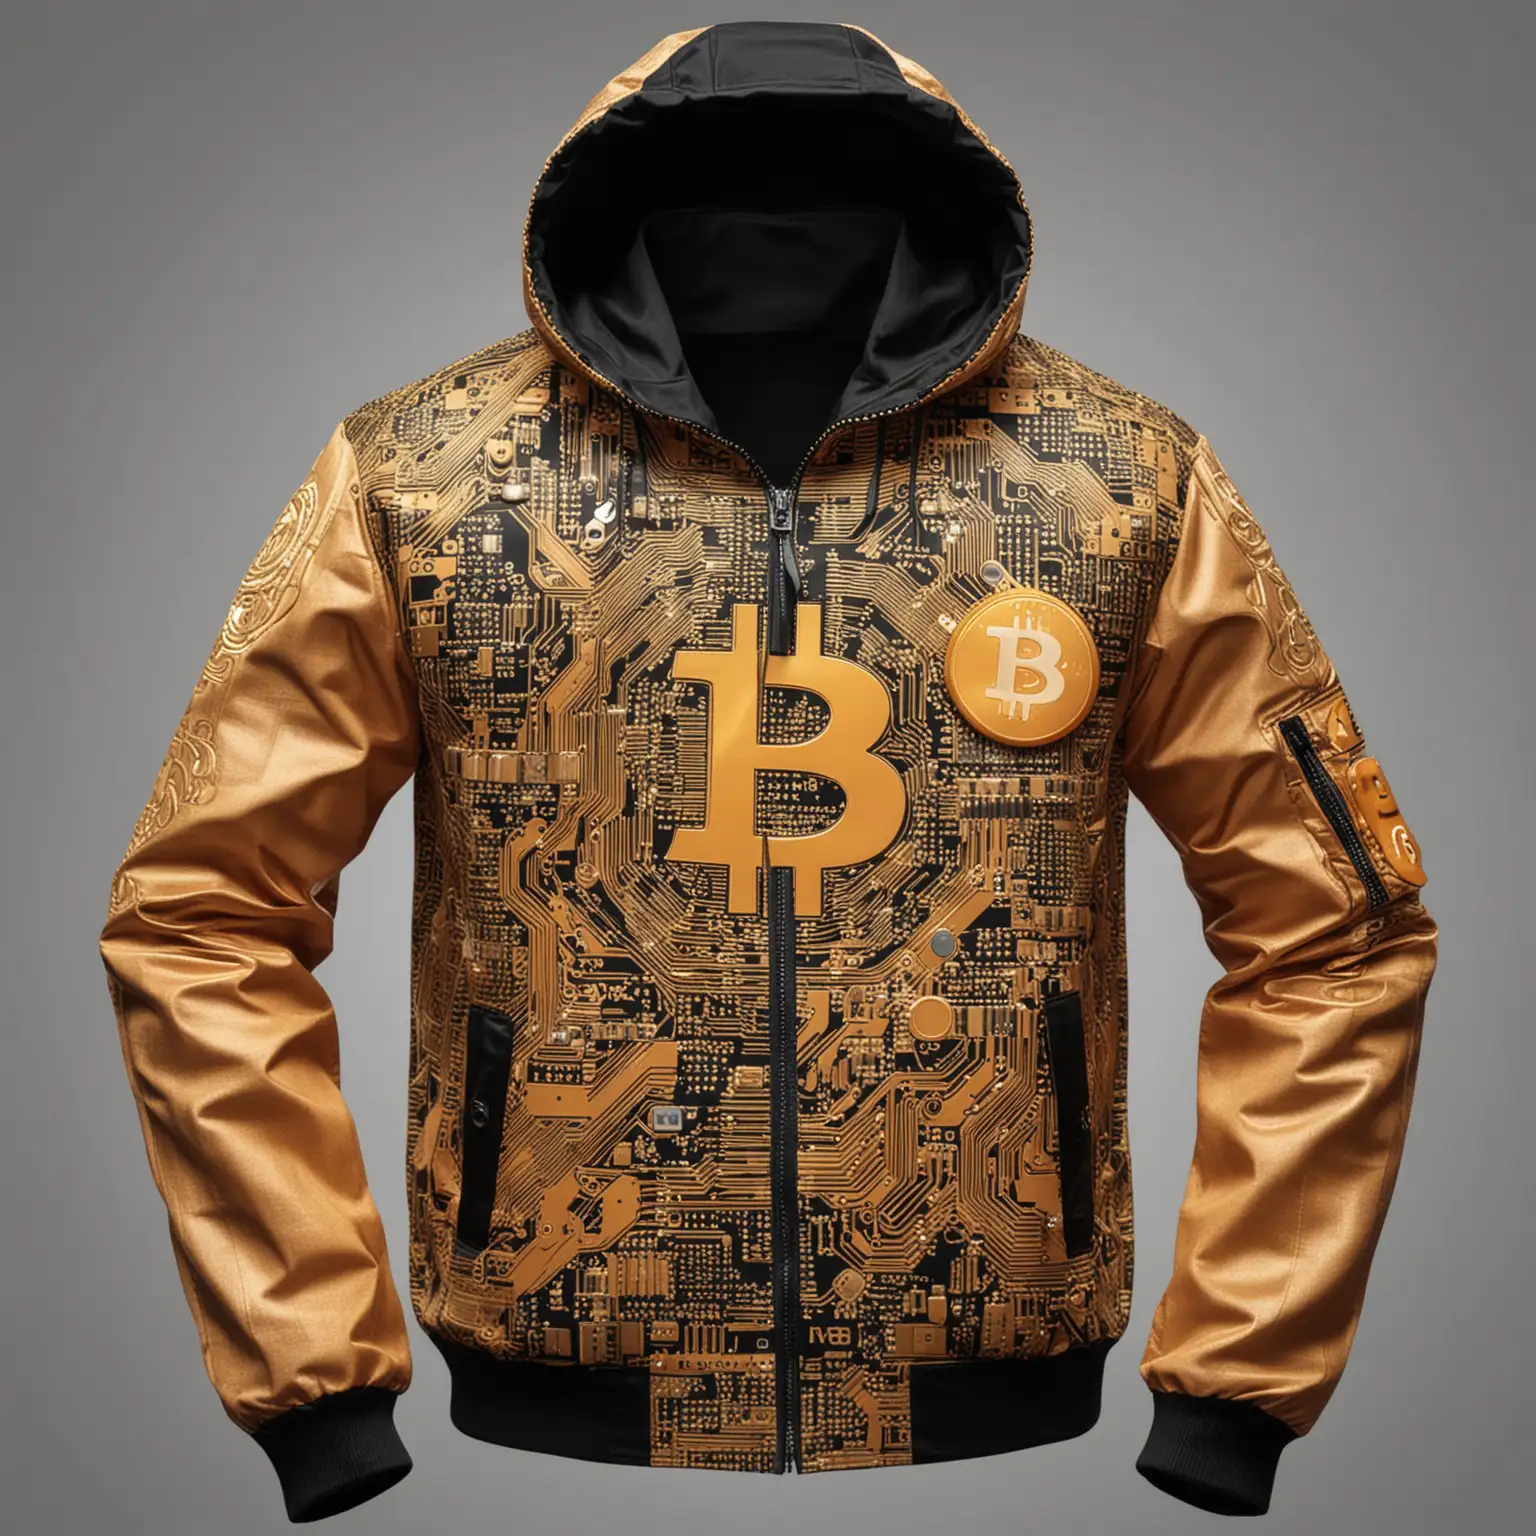 Stylish BitcoinThemed Jacket with Cryptocurrency Symbols